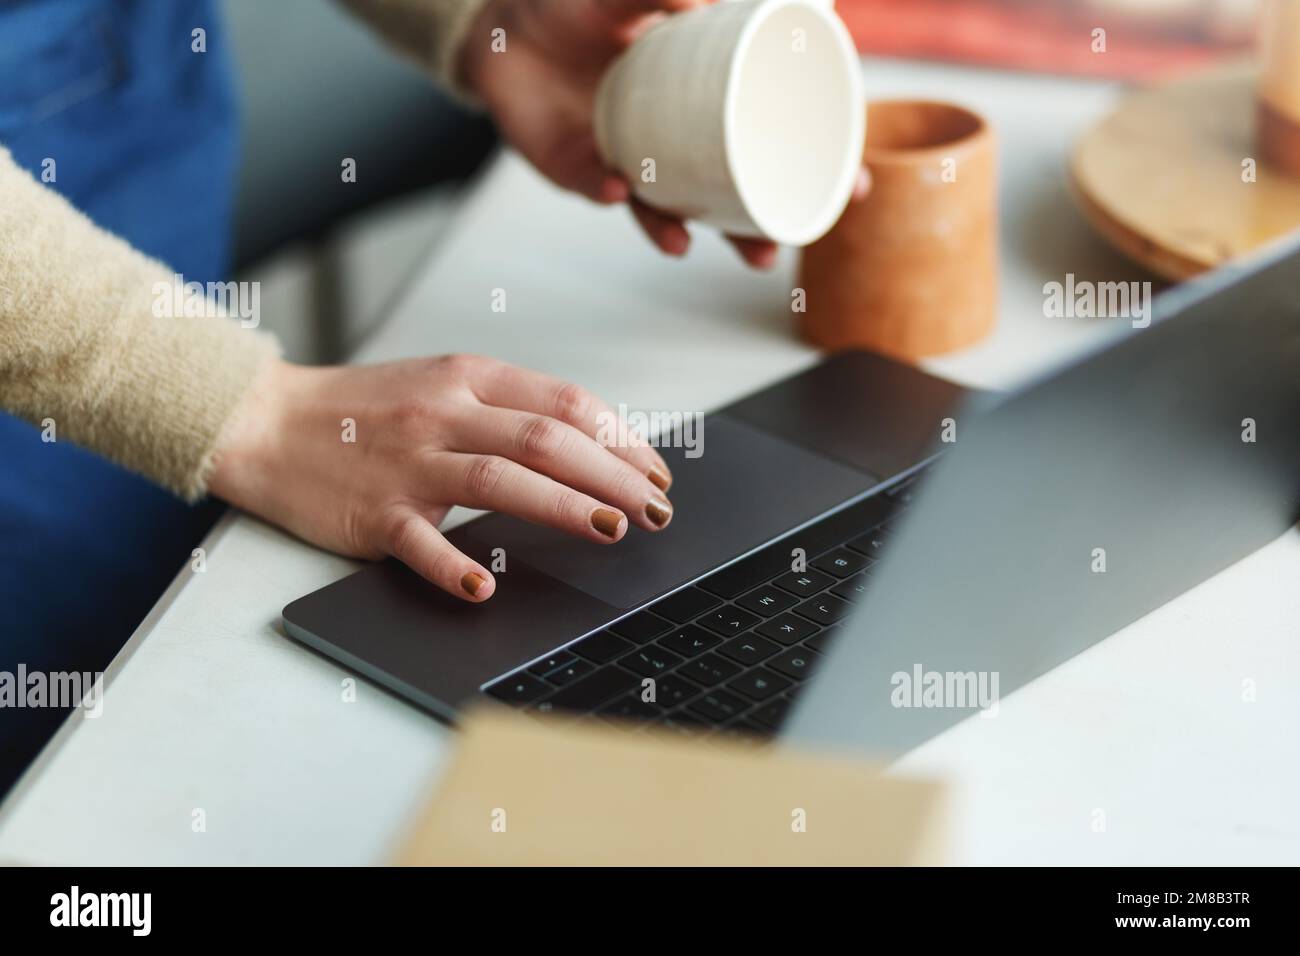 Potter imprenditore utilizzando il laptop in officina, solo le mani, tenendo in mano la tazza di ceramica, prende ordini online. Foto Stock